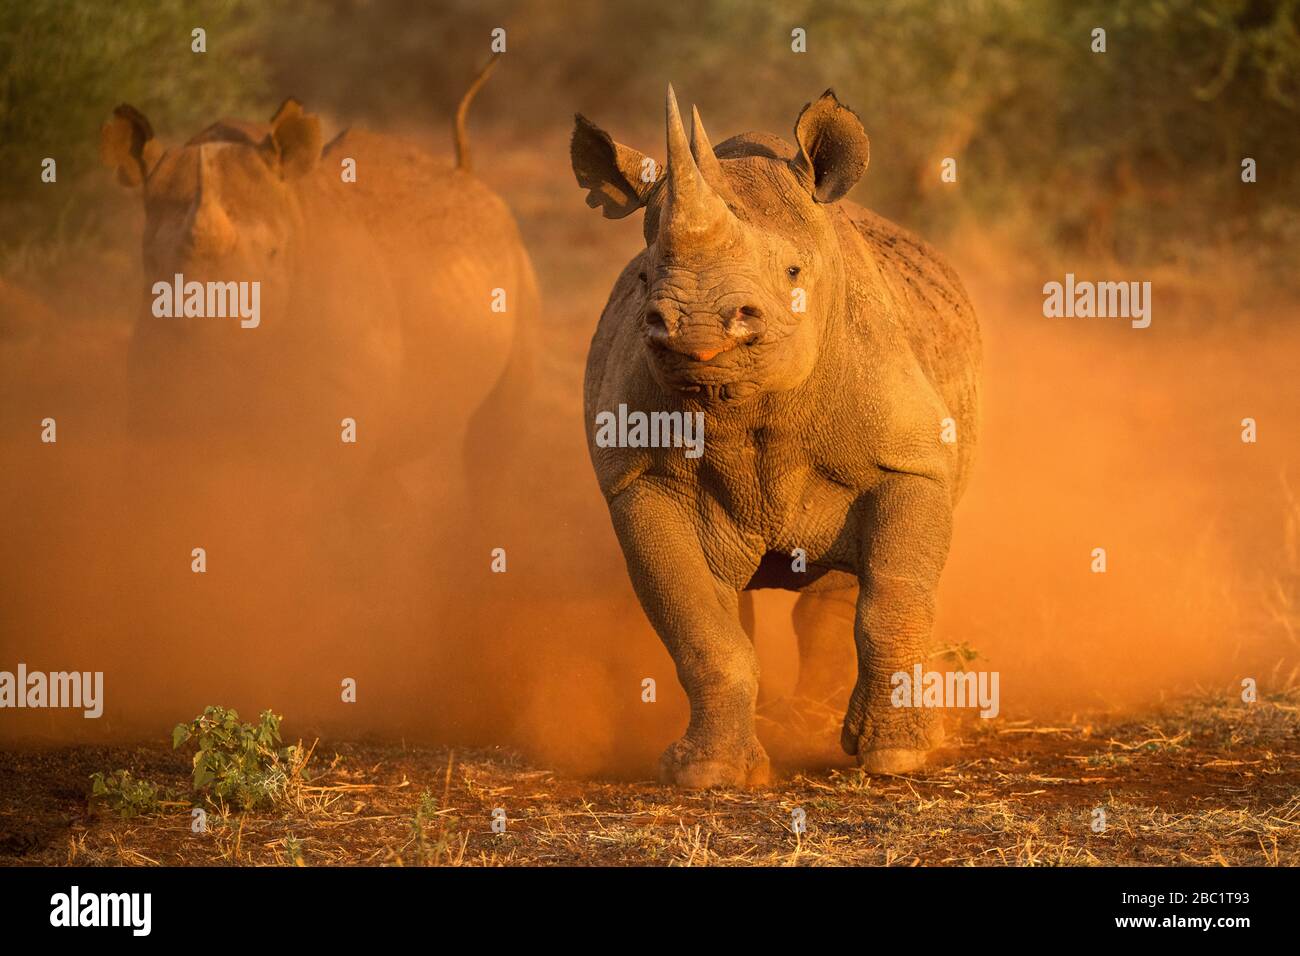 Una fotografía de acción de dos rinocerontes negros femeninos cobrando en el vehículo de juego, pateando el polvo rojo al amanecer, tomada en la Reserva del Juego Madikwe, Sur Foto de stock